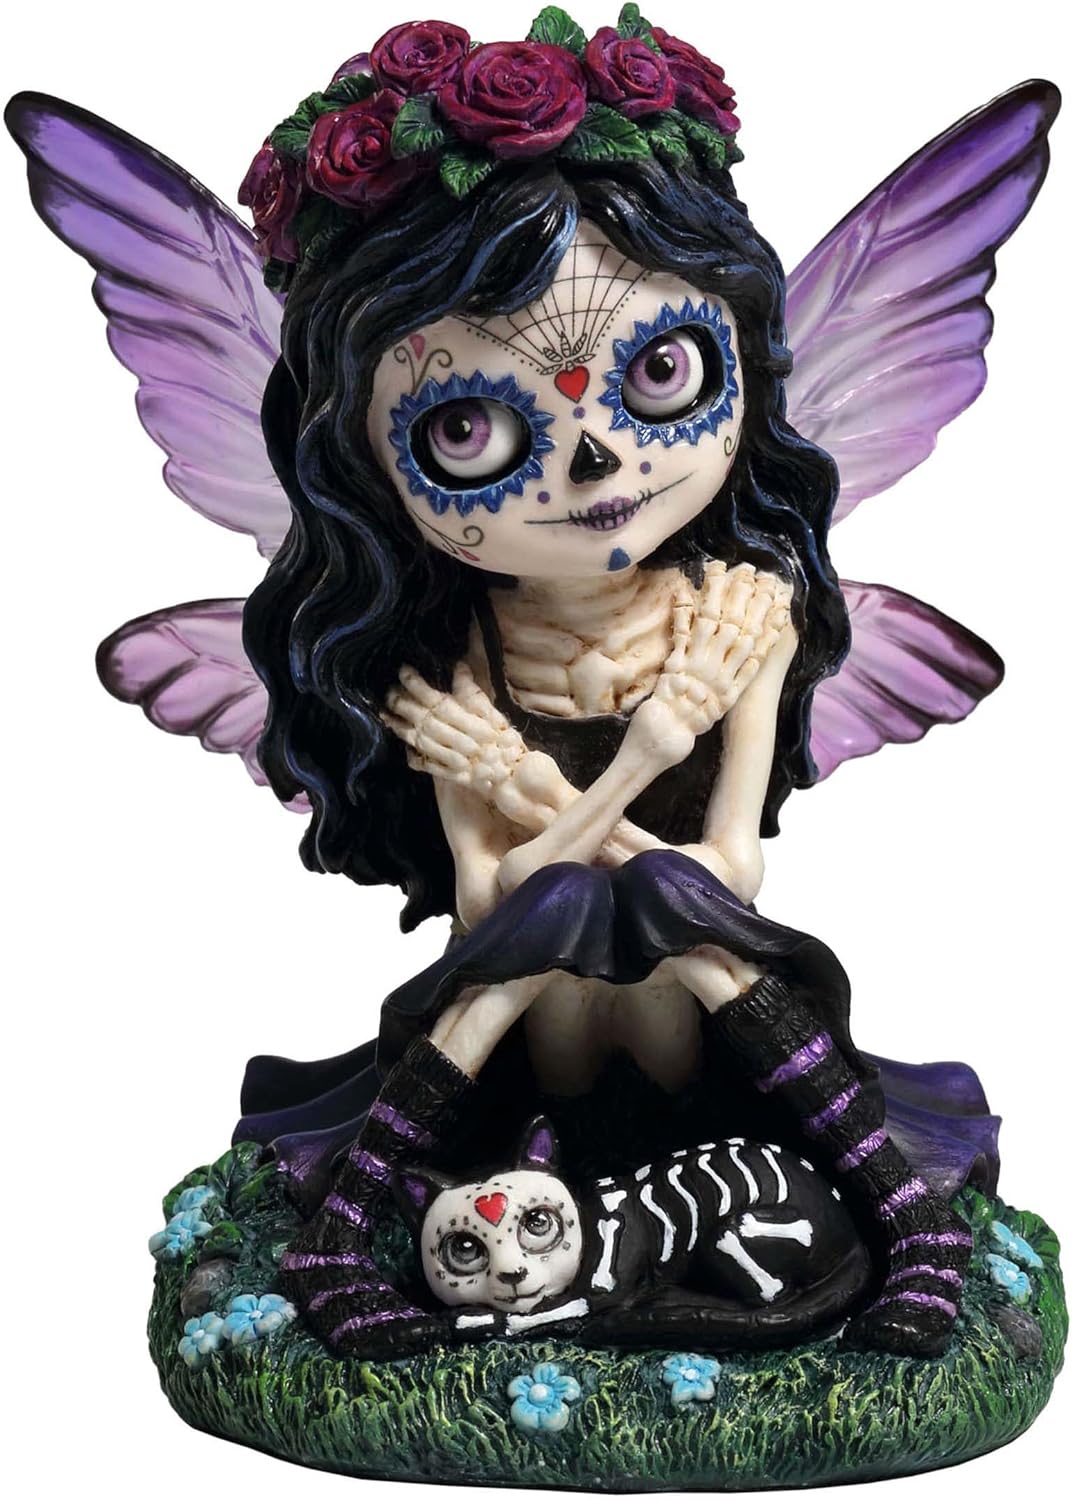 Cosplay Kids Skeleton Fairy
Metamorphosis